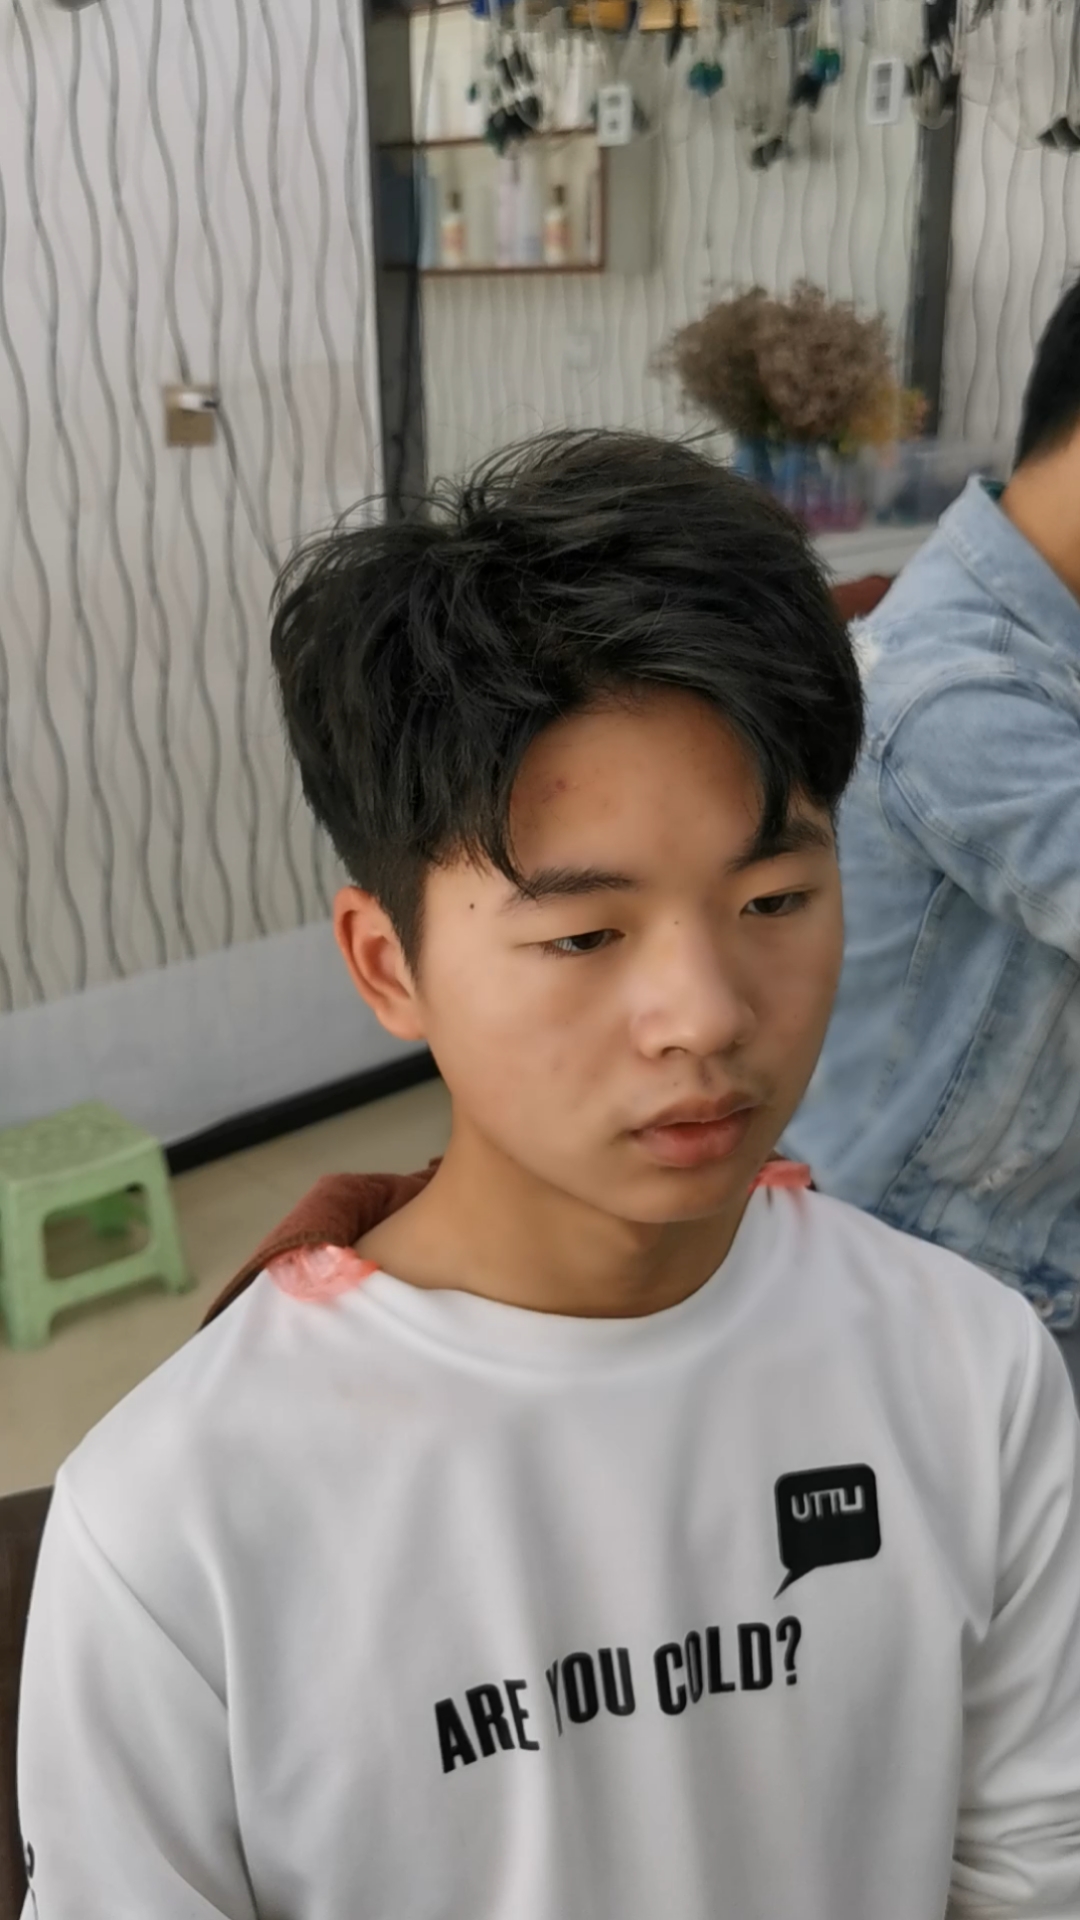 韩式46分发型男 短发图片